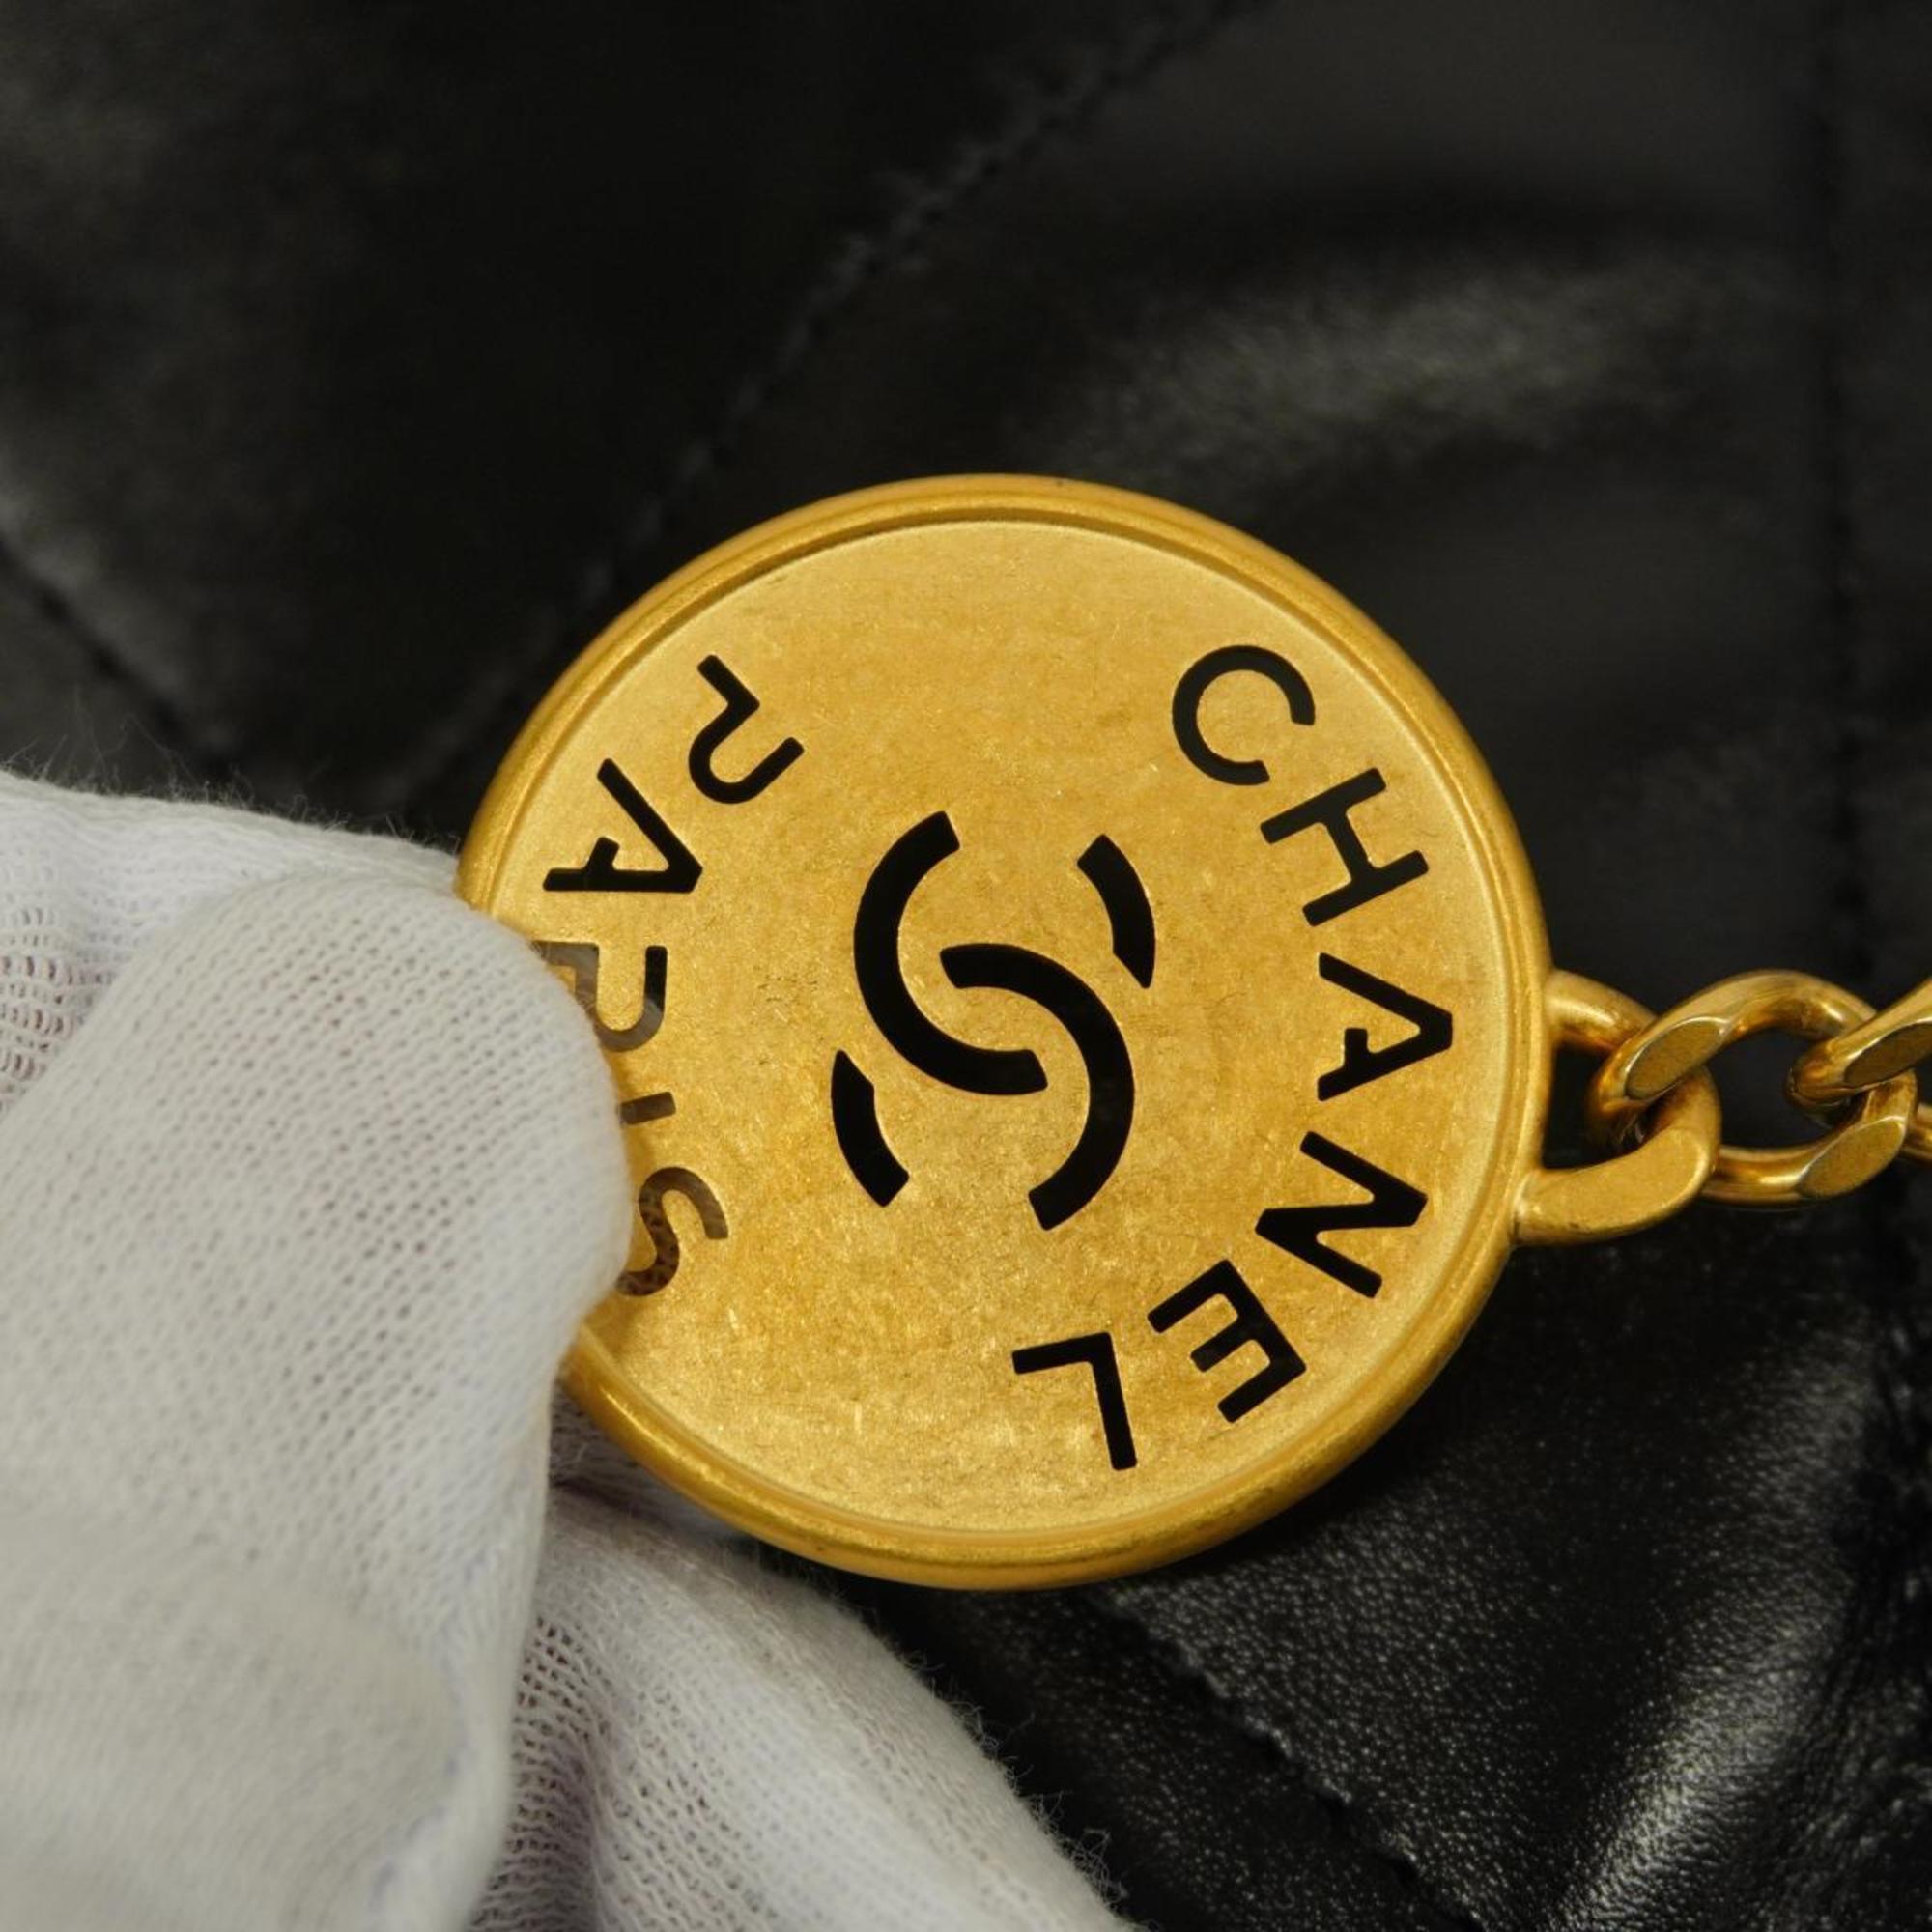 シャネル(Chanel) シャネル ハンドバッグ CHANEL22 チェーンショルダー カーフスキン ブラック   レディース